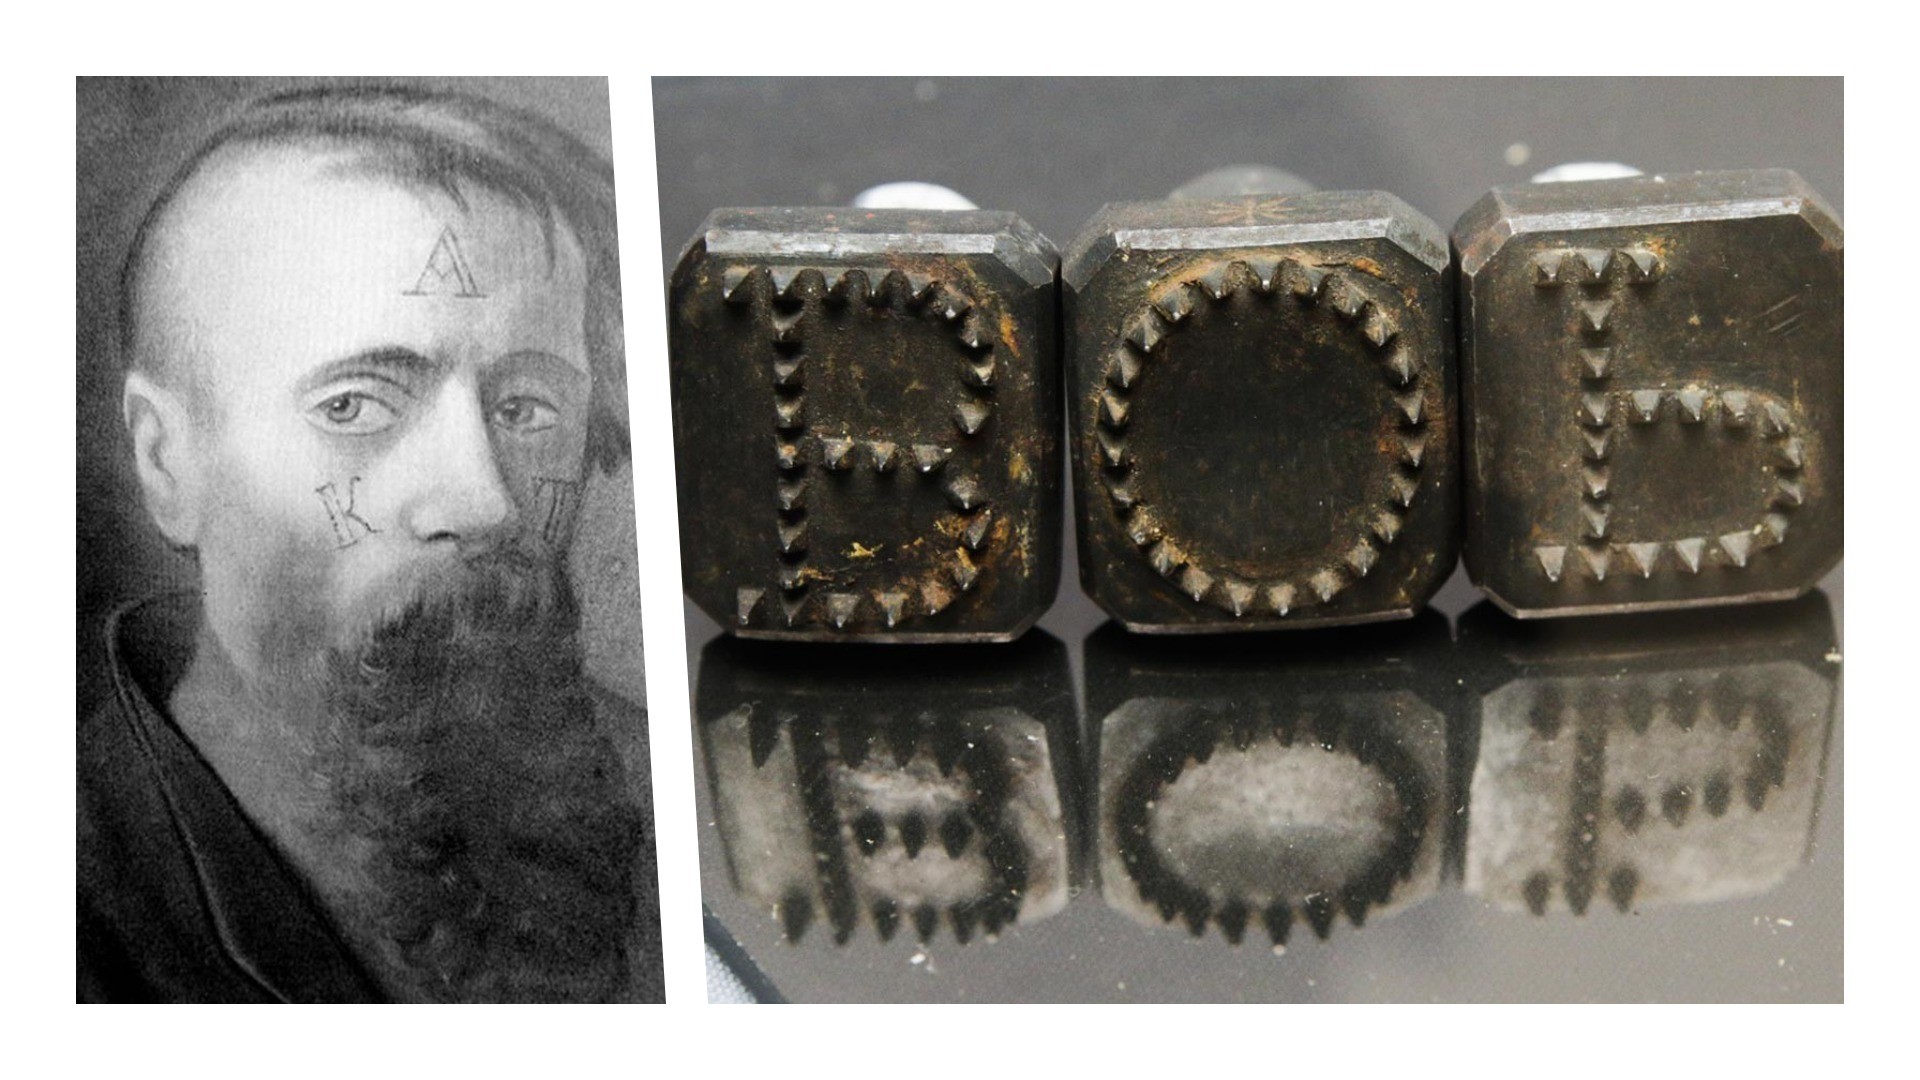 La méthode de marquage du visage d'un condamné / Outil de marquage, début du XIXe siècle
